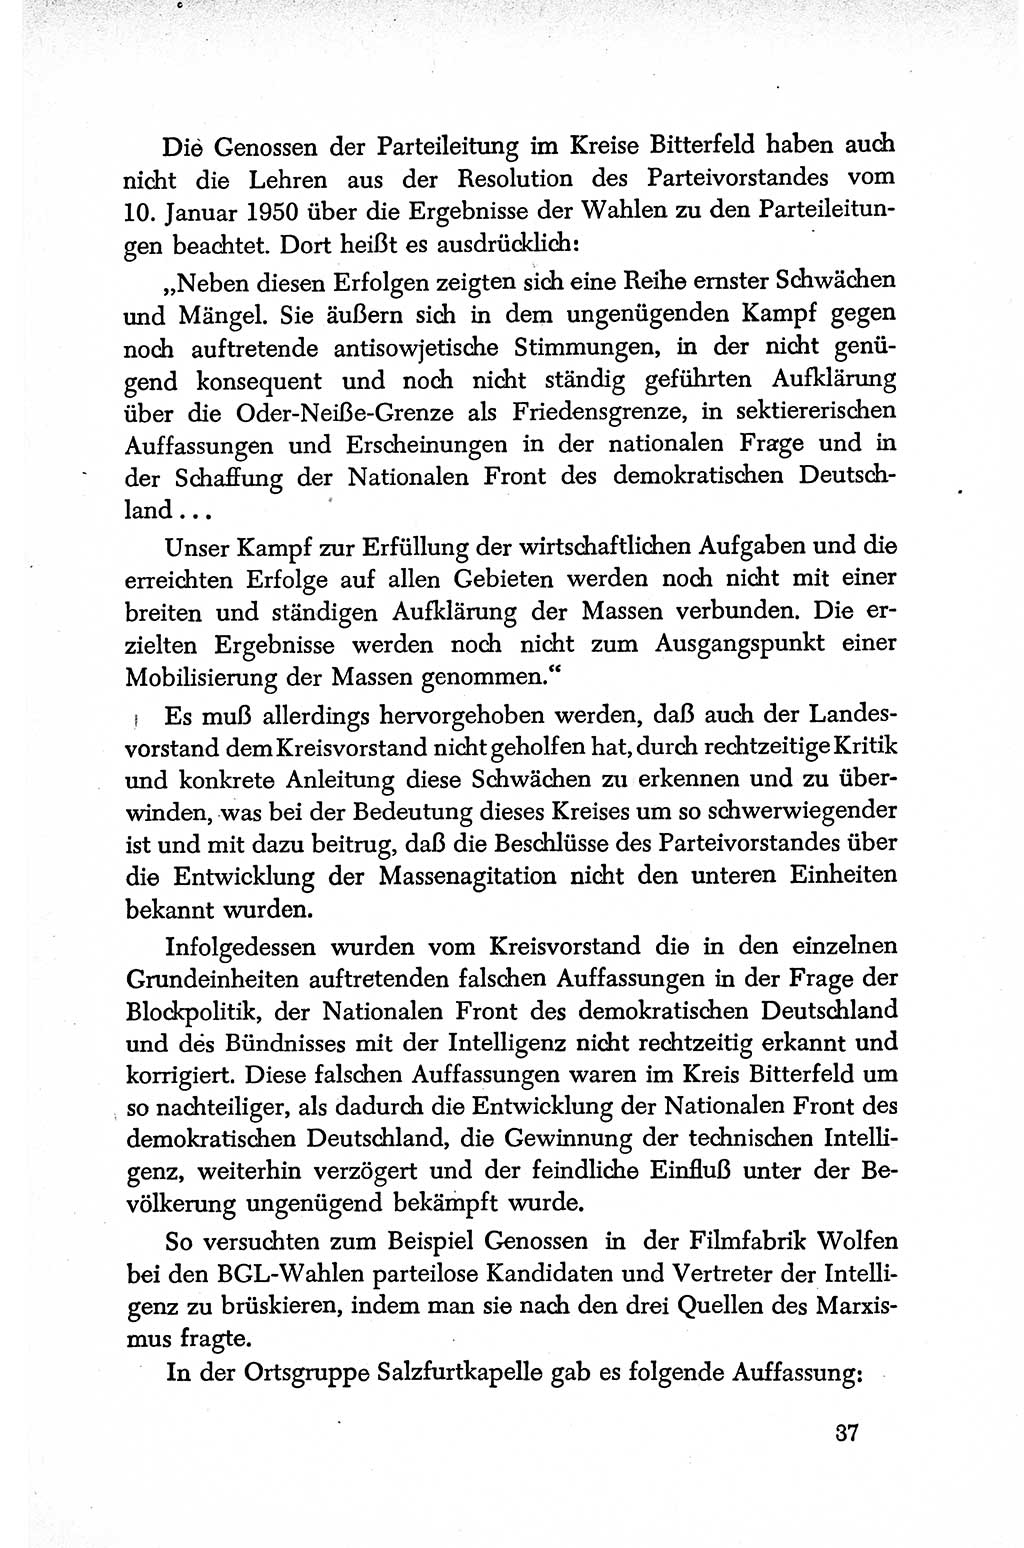 Dokumente der Sozialistischen Einheitspartei Deutschlands (SED) [Deutsche Demokratische Republik (DDR)] 1950-1952, Seite 37 (Dok. SED DDR 1950-1952, S. 37)